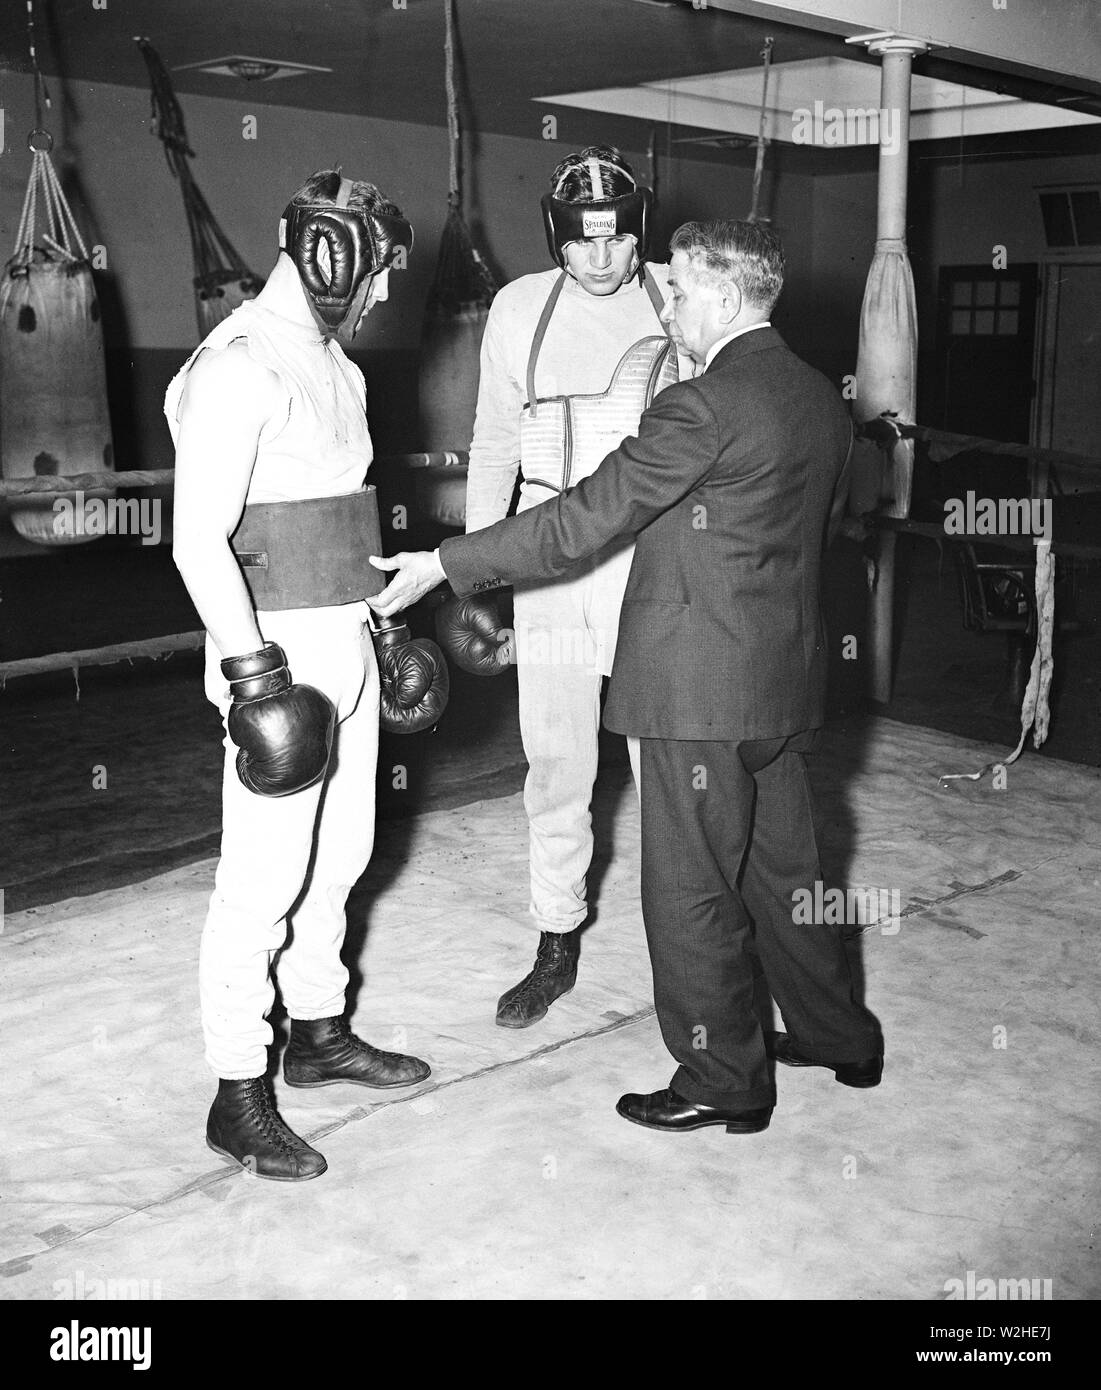 Homme en costume s'adressant à deux boxeurs sur le ring d'un club de boxe ca. 1936 Banque D'Images